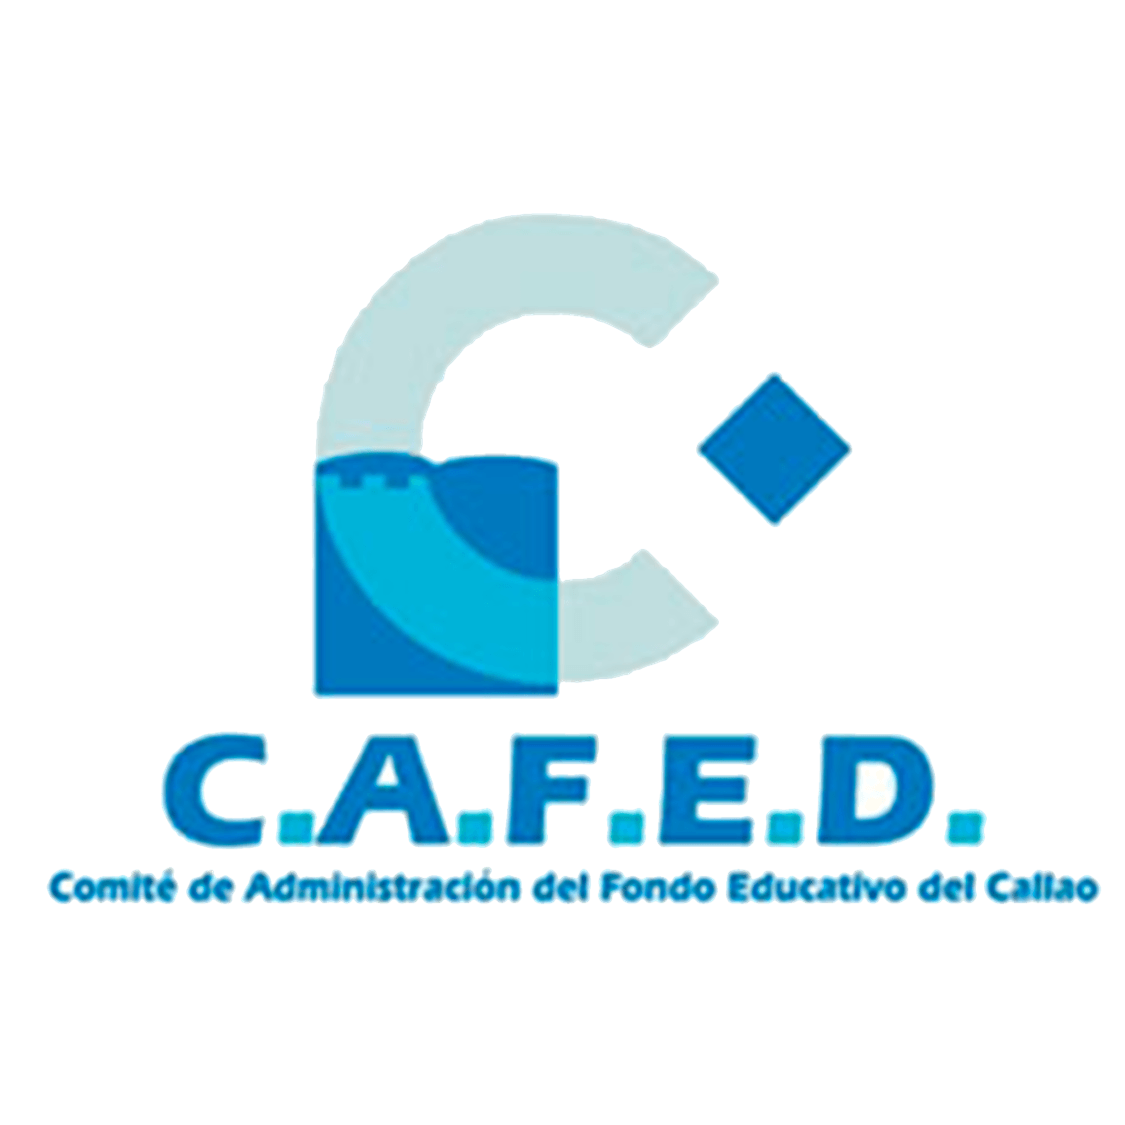 Cafe D Logo - Comapañeros. Aquí les dejo los logos de CAFED, y de la Región Callao ...